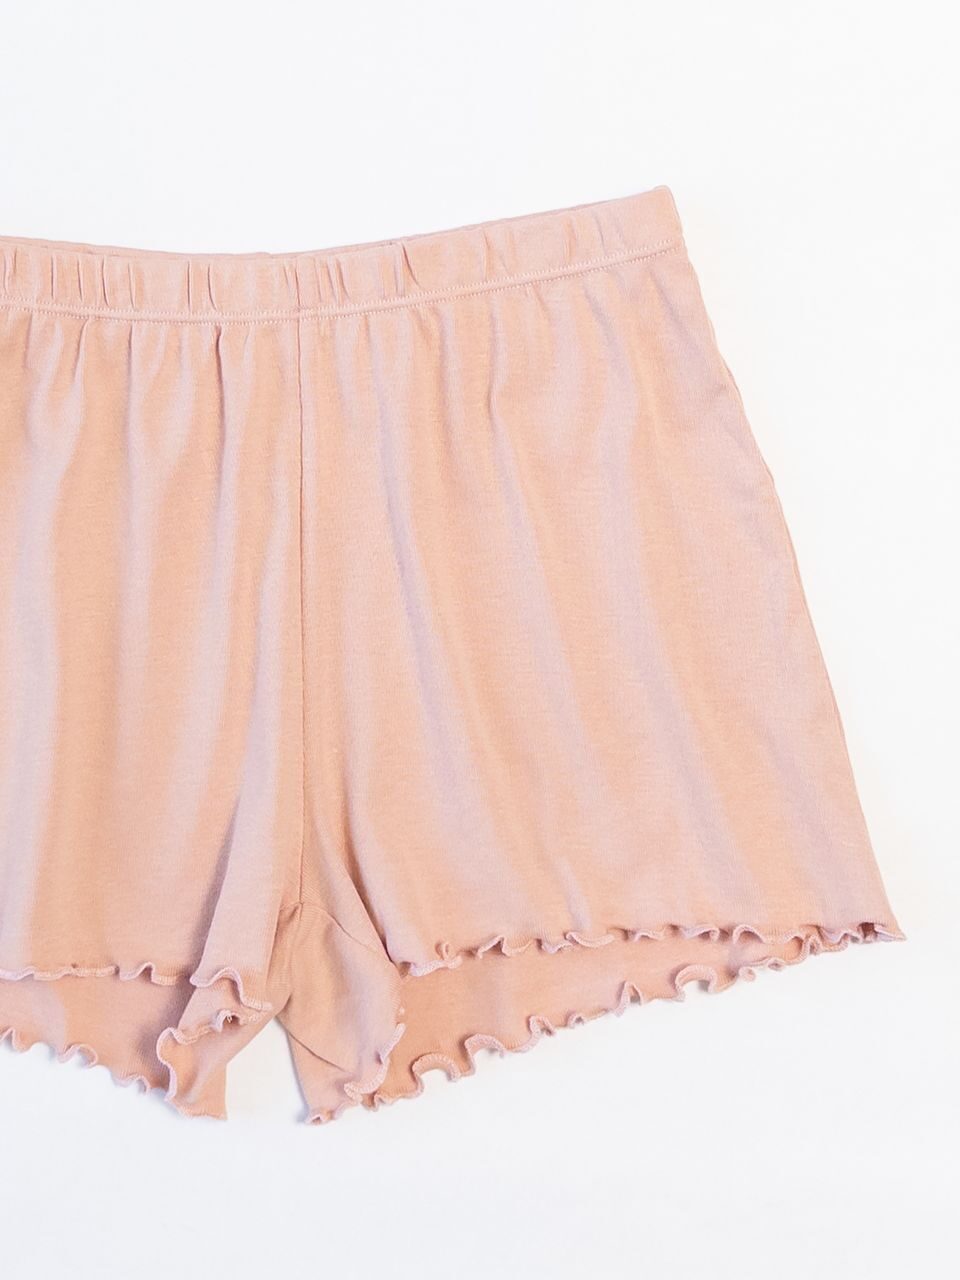 Шорты с эластичной талией и оверлочными краями штанин цвет пыльная-розовый для девочки на рост  134/140 см H&M